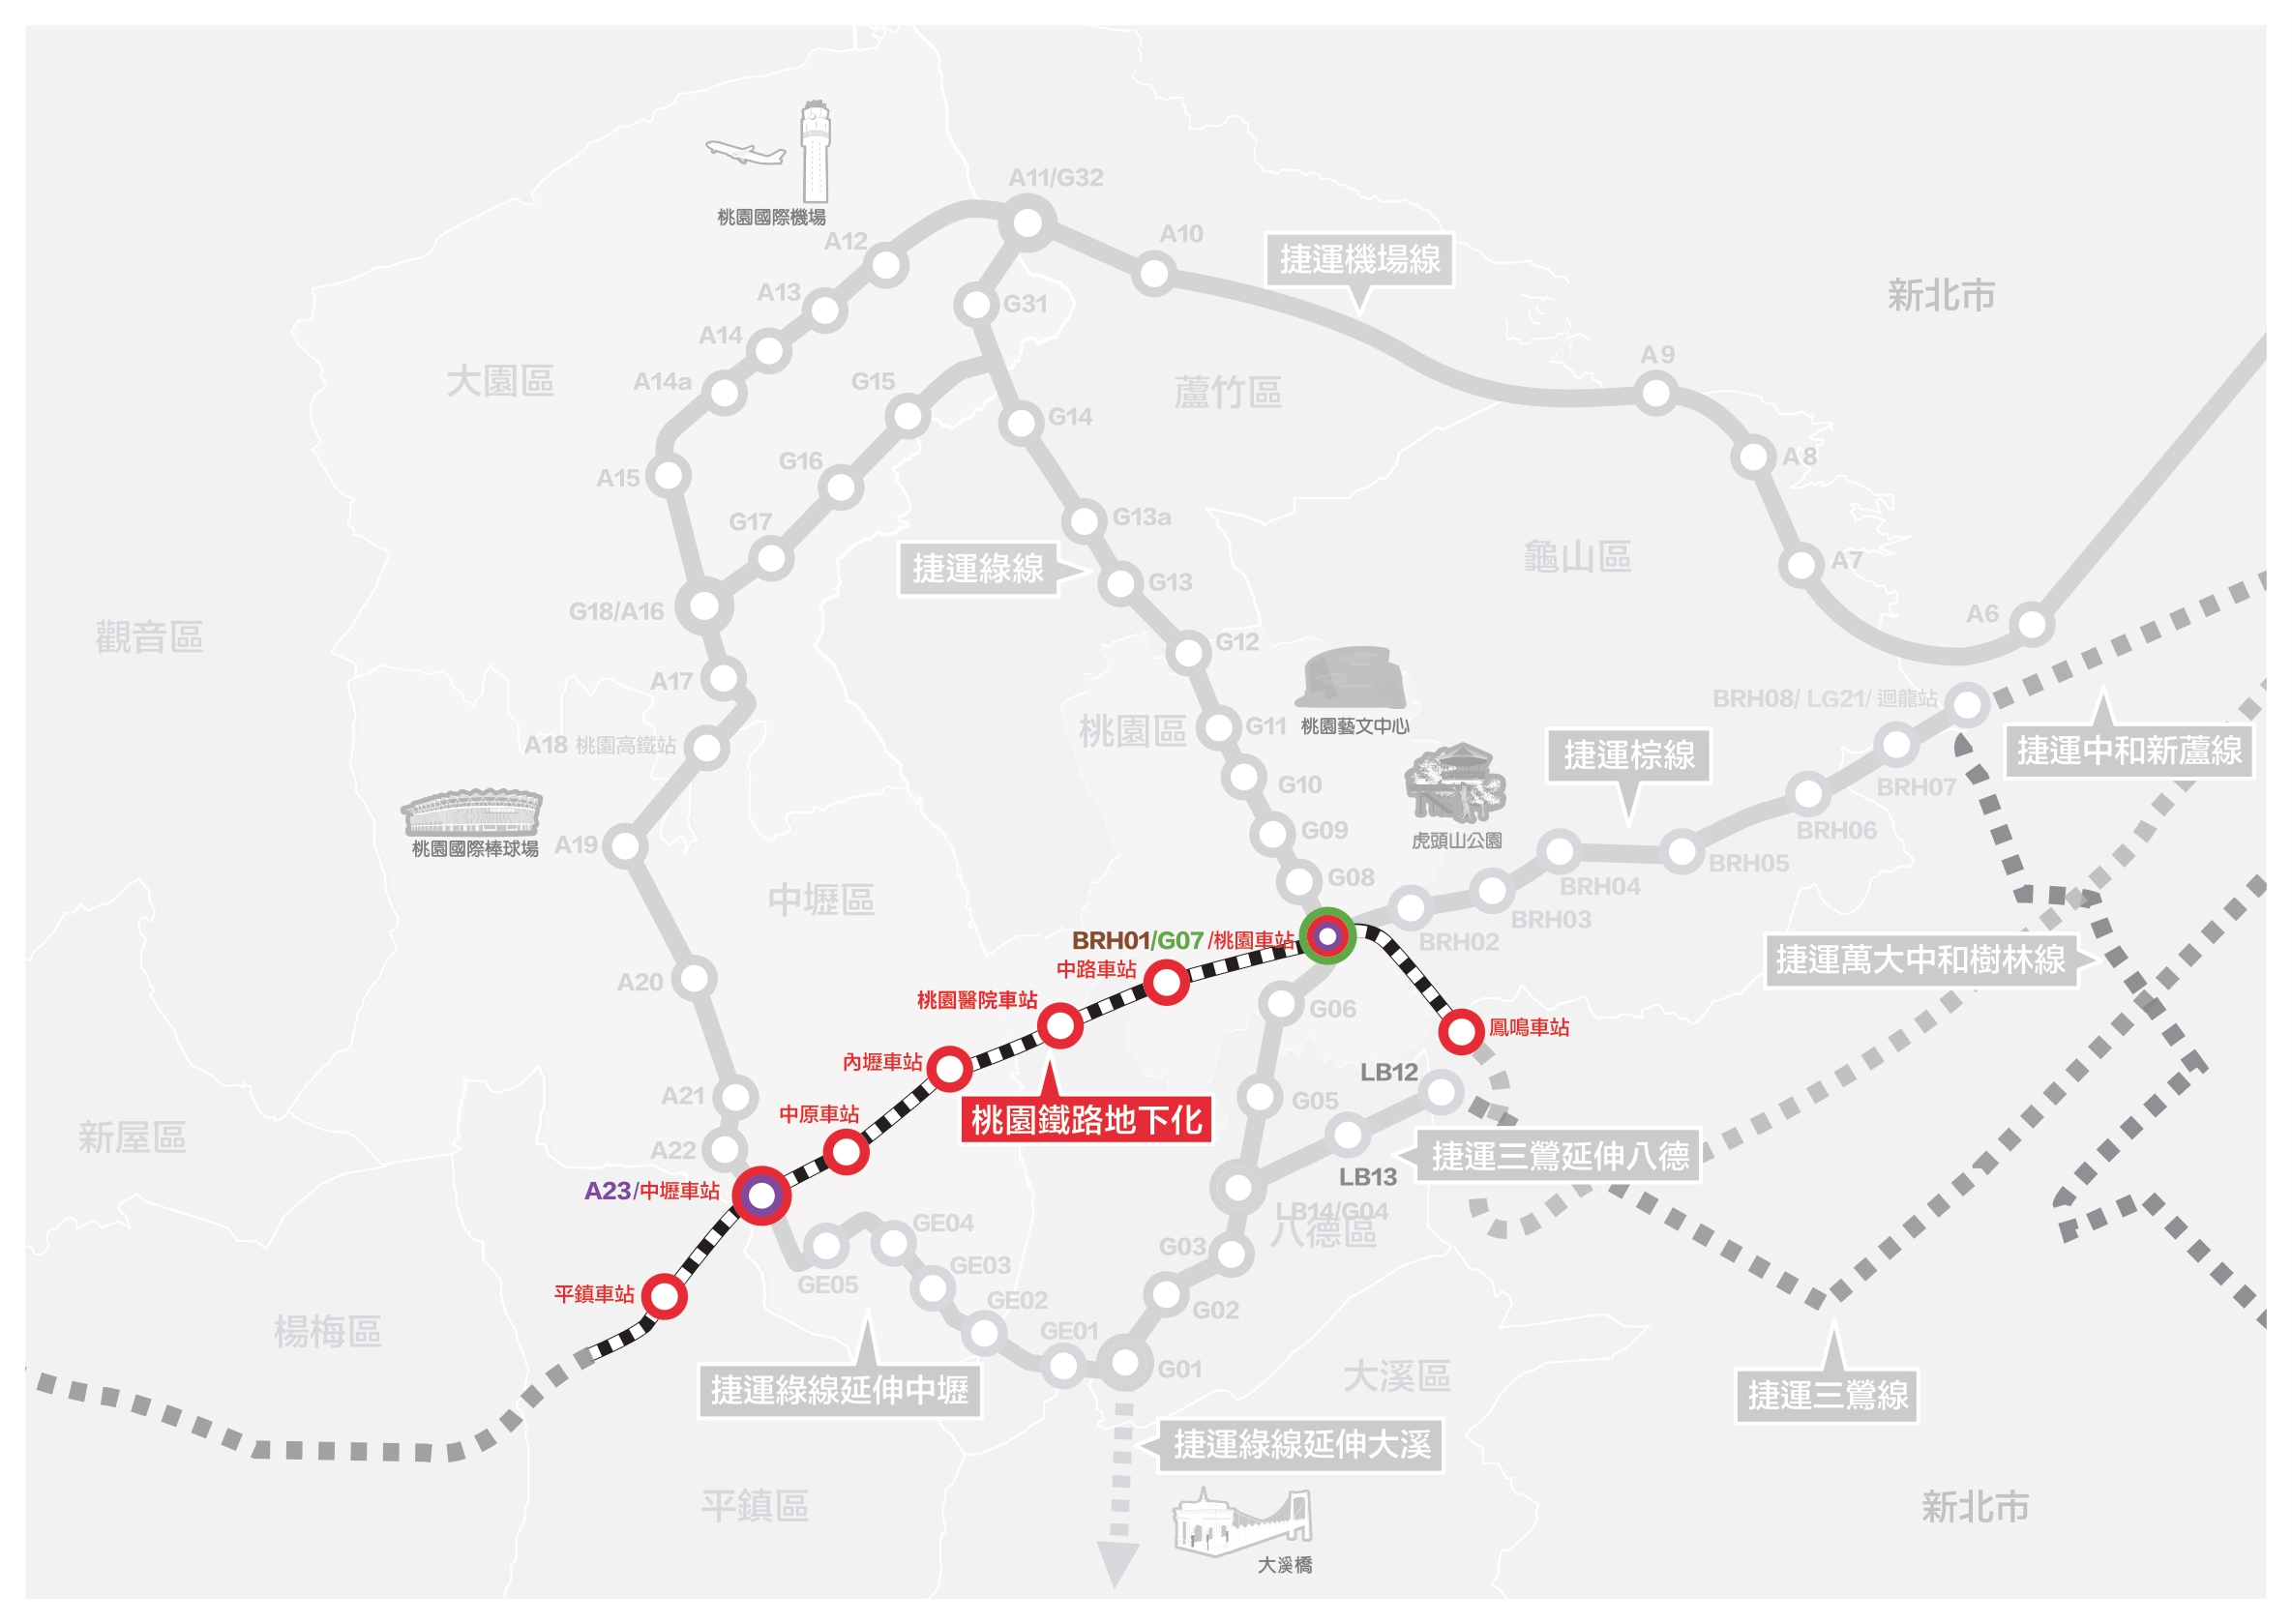 Taoyuan Railway Underground MAP